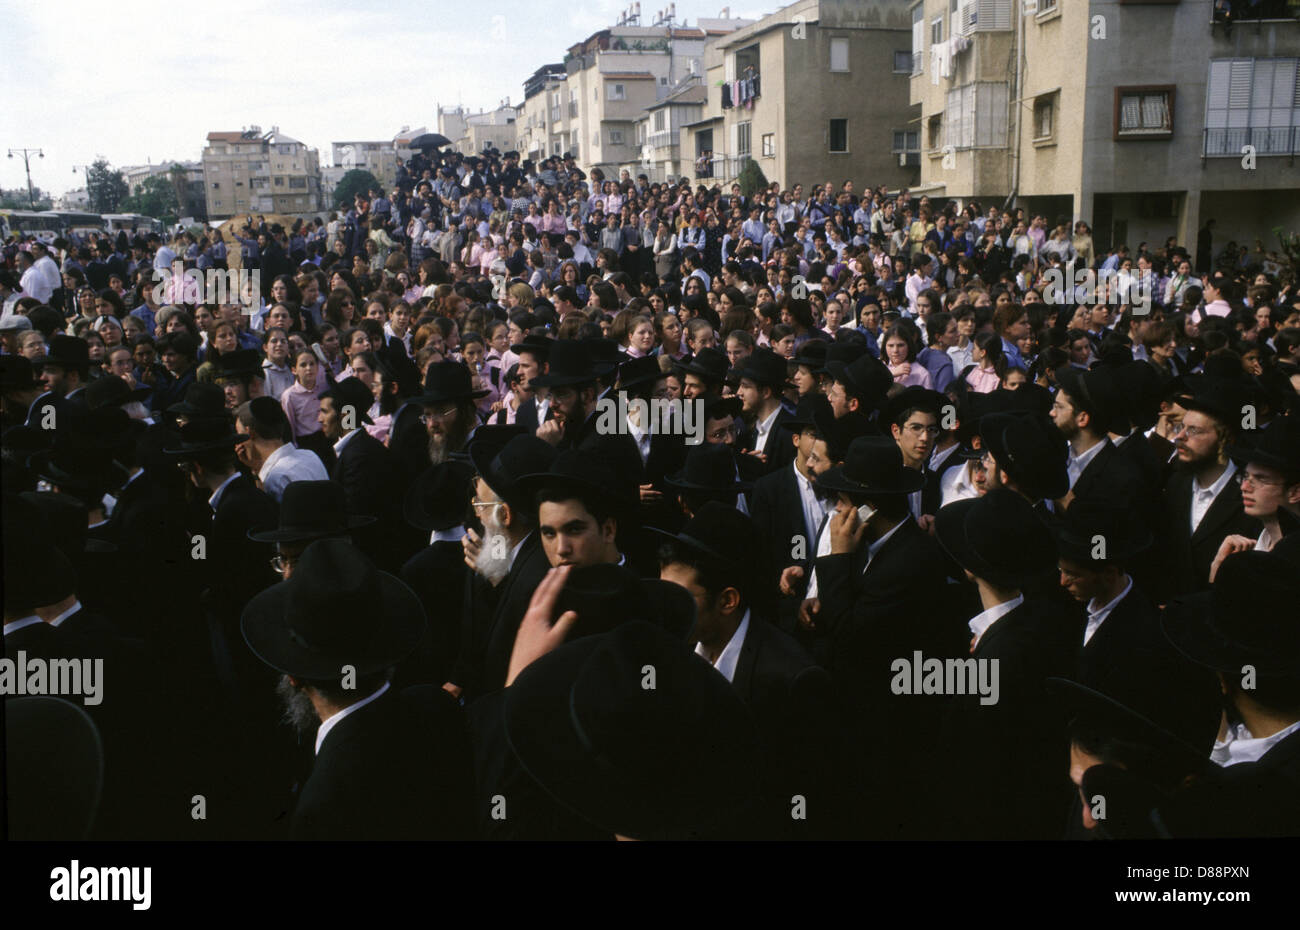 Ebrei ultraortodossi in distintivi garb nero durante i funerali nella città di Bnei Brak o bene Beraq un centro del giudaismo di Haredi in Israele Foto Stock